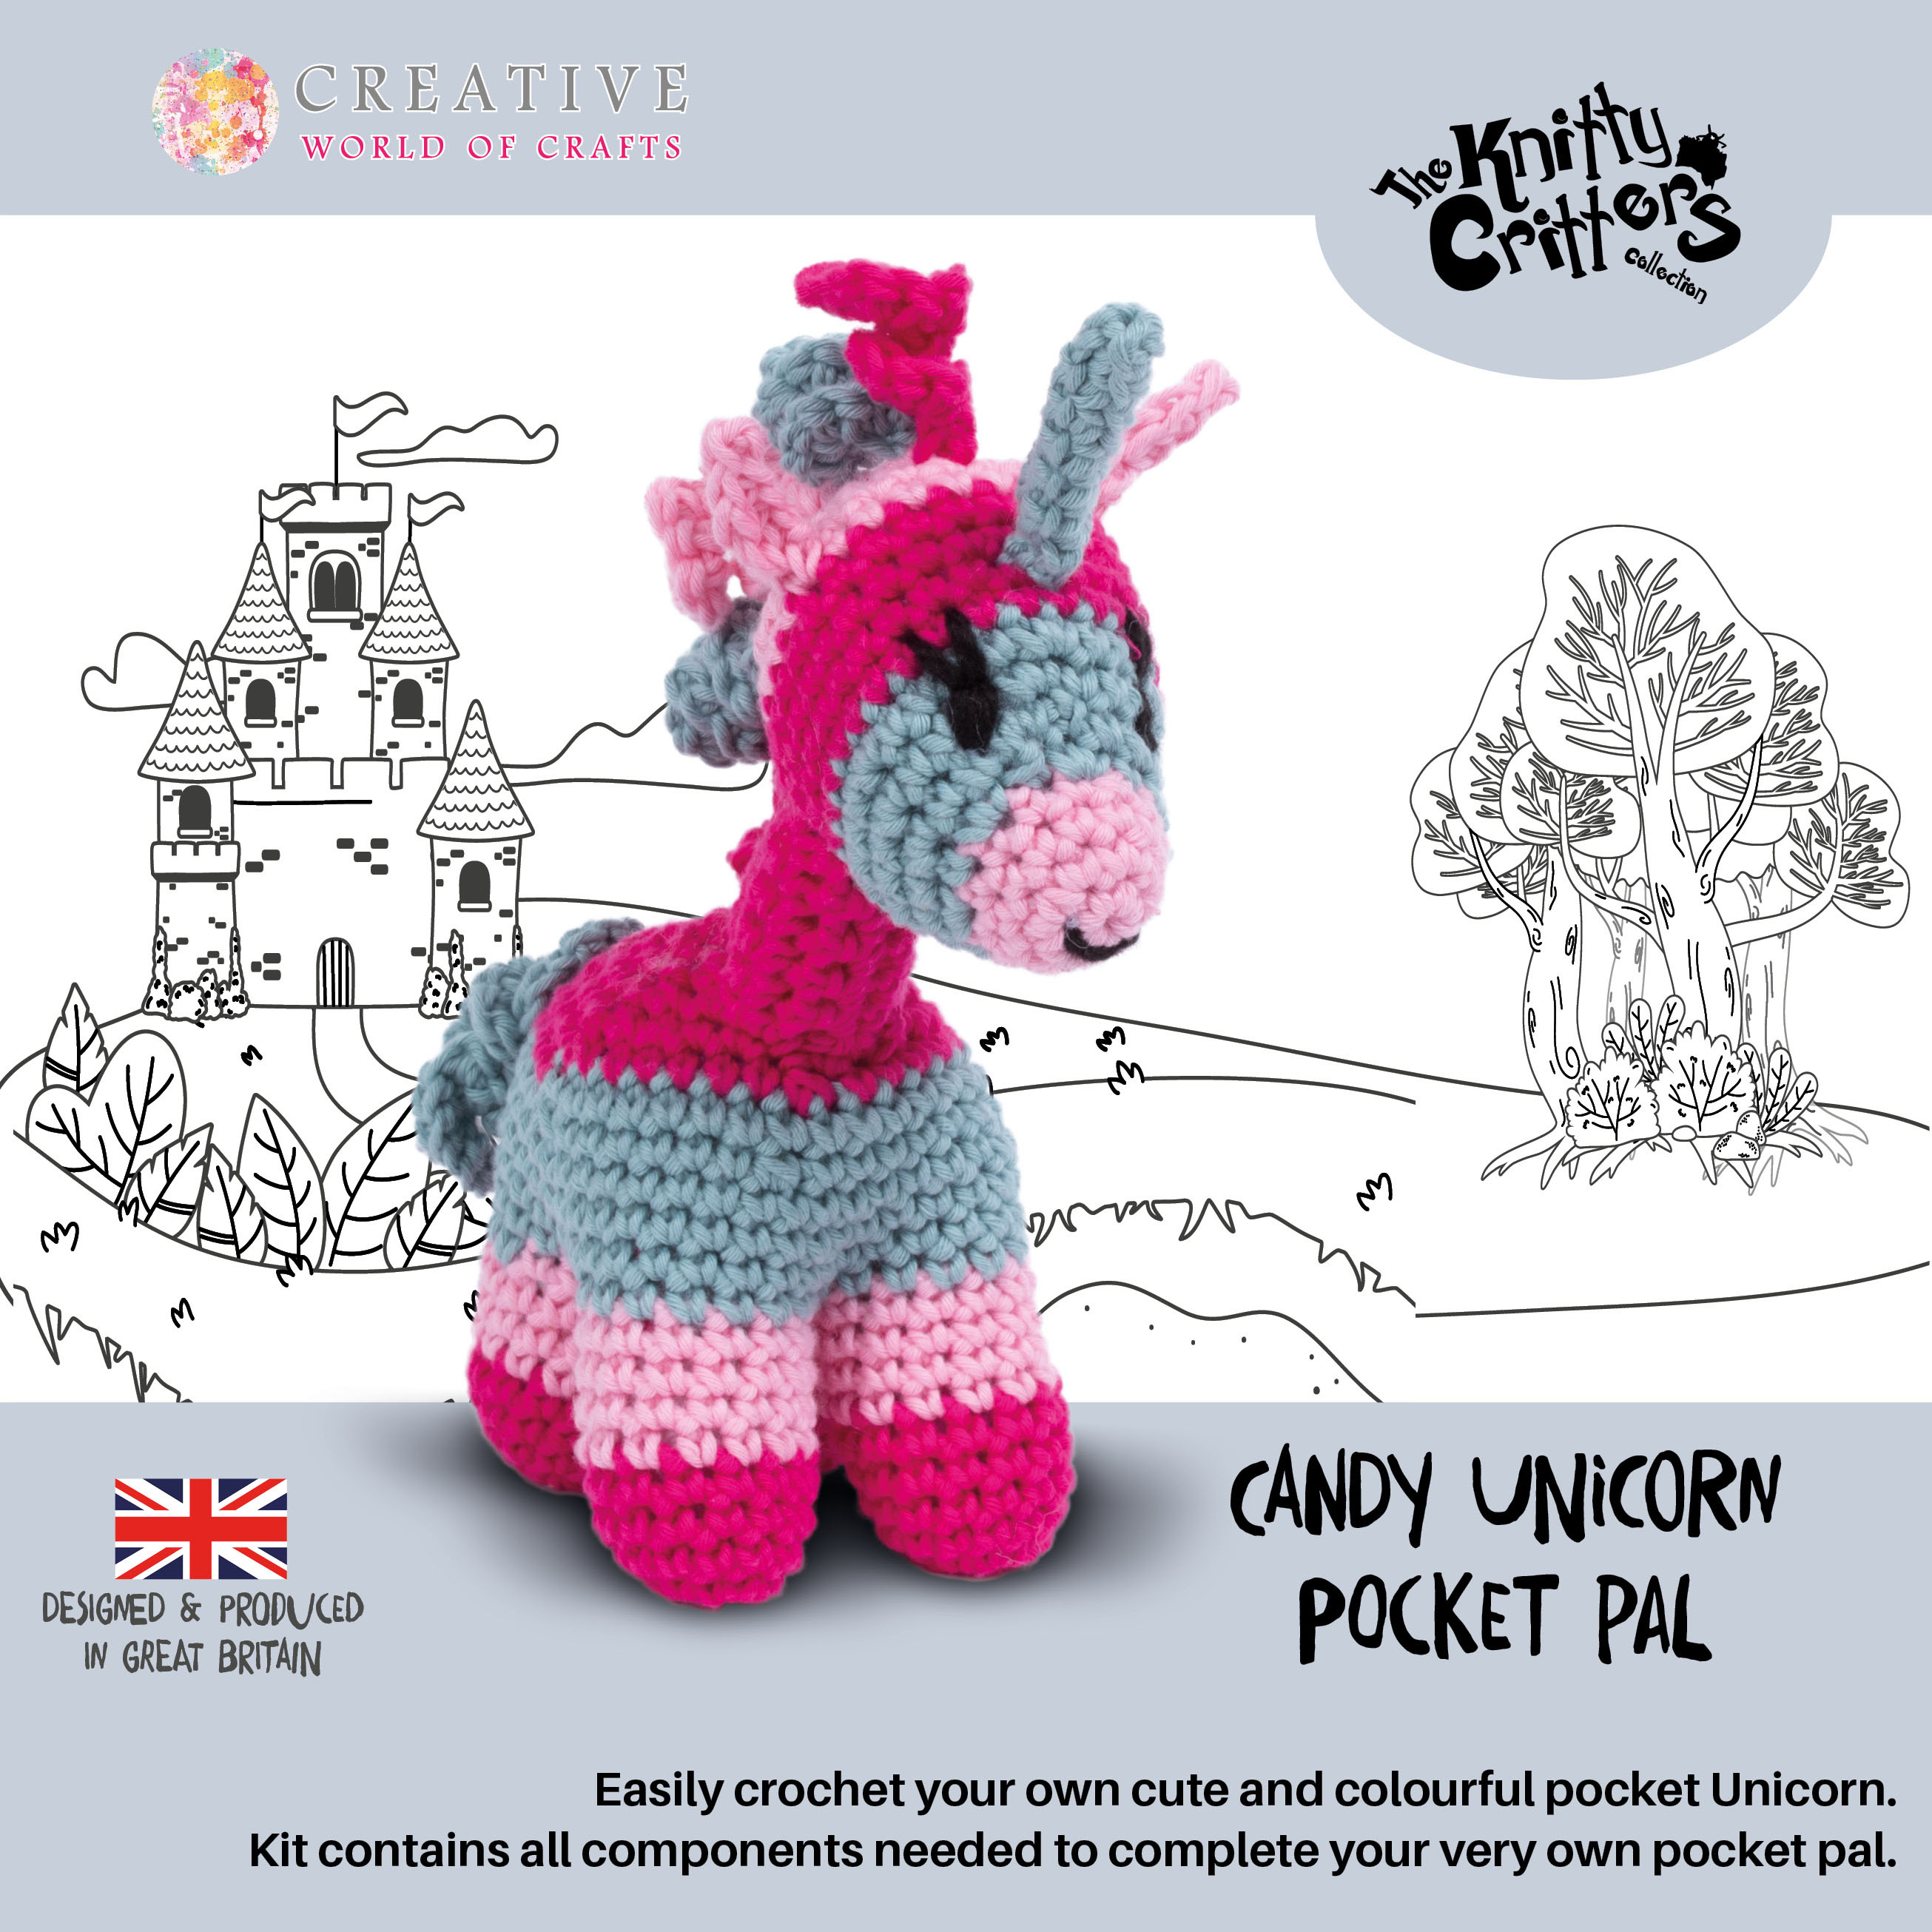 Knitty Critters - Pocket Pals - Candy Unicorn